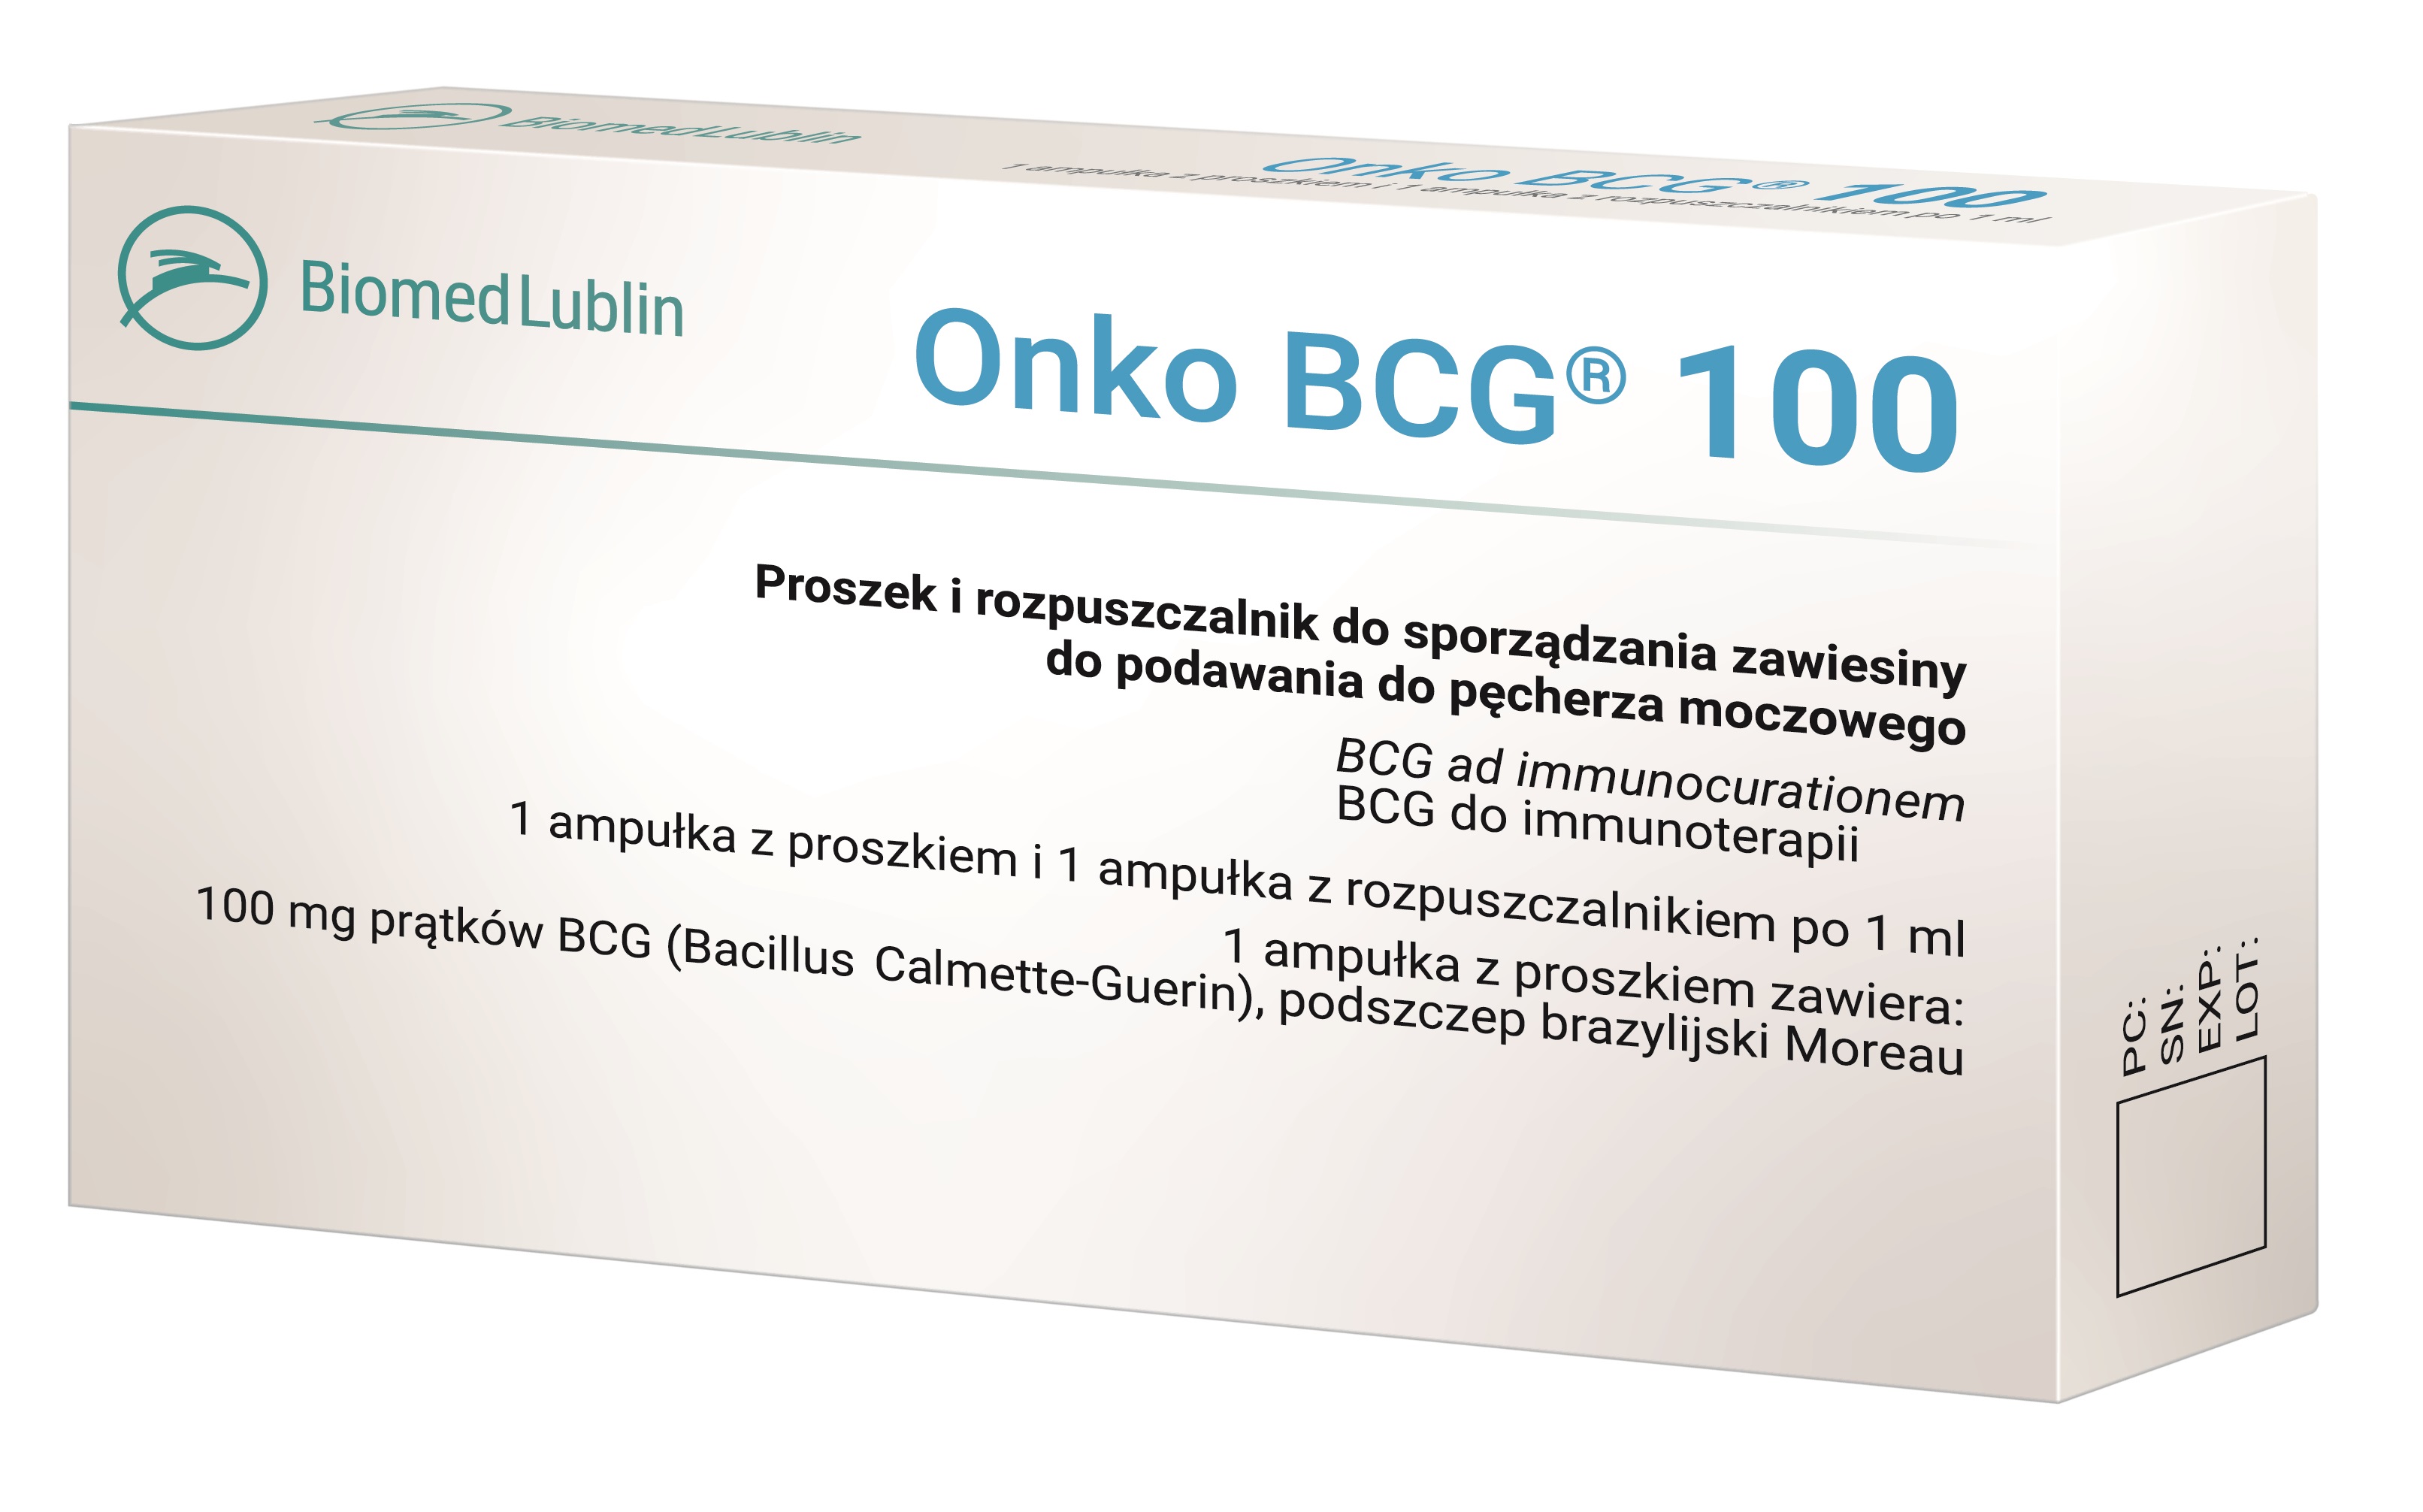 Onko BCG 100